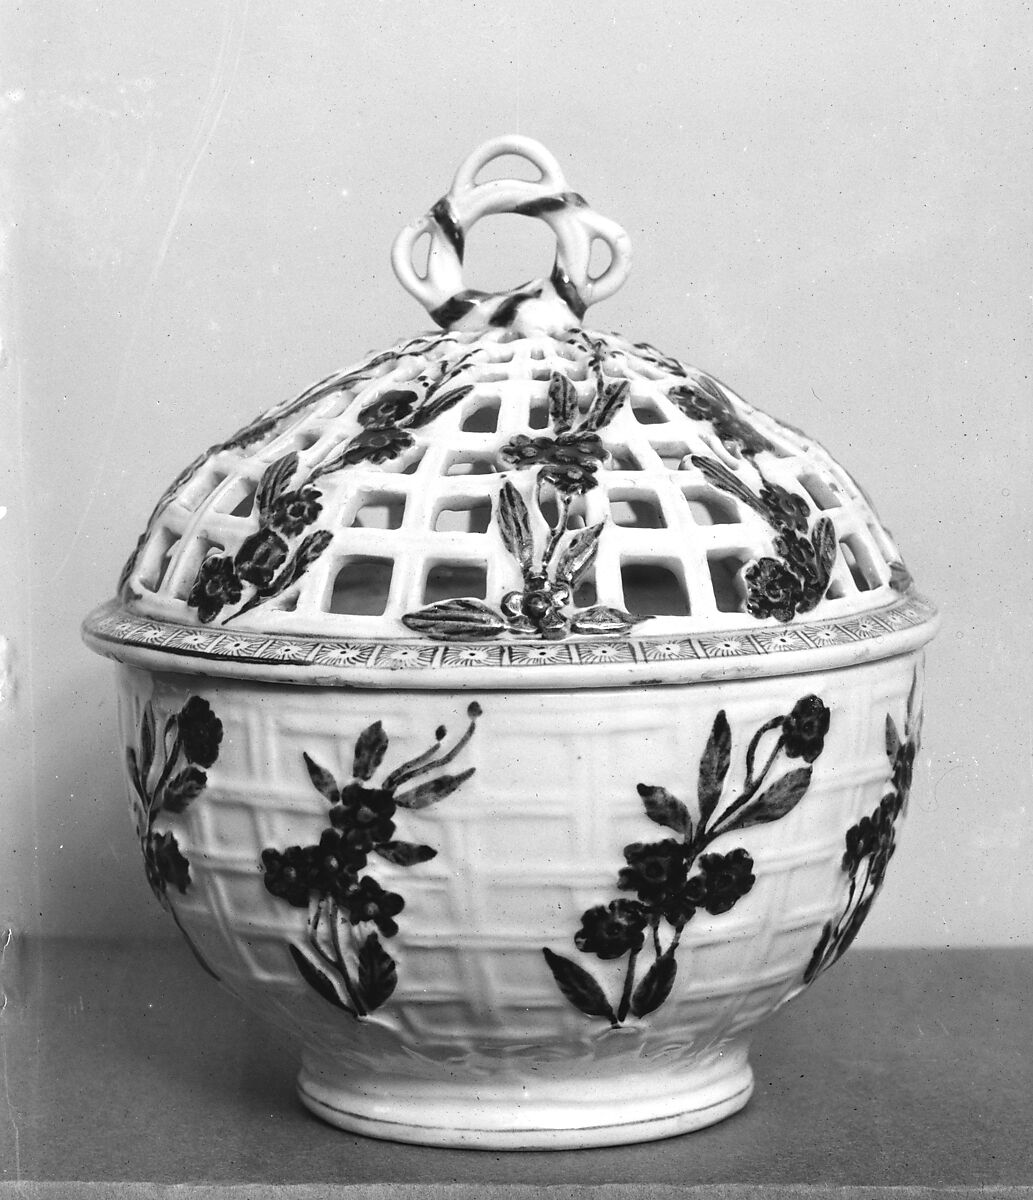 Chestnut Bowl, Porcelain, British 